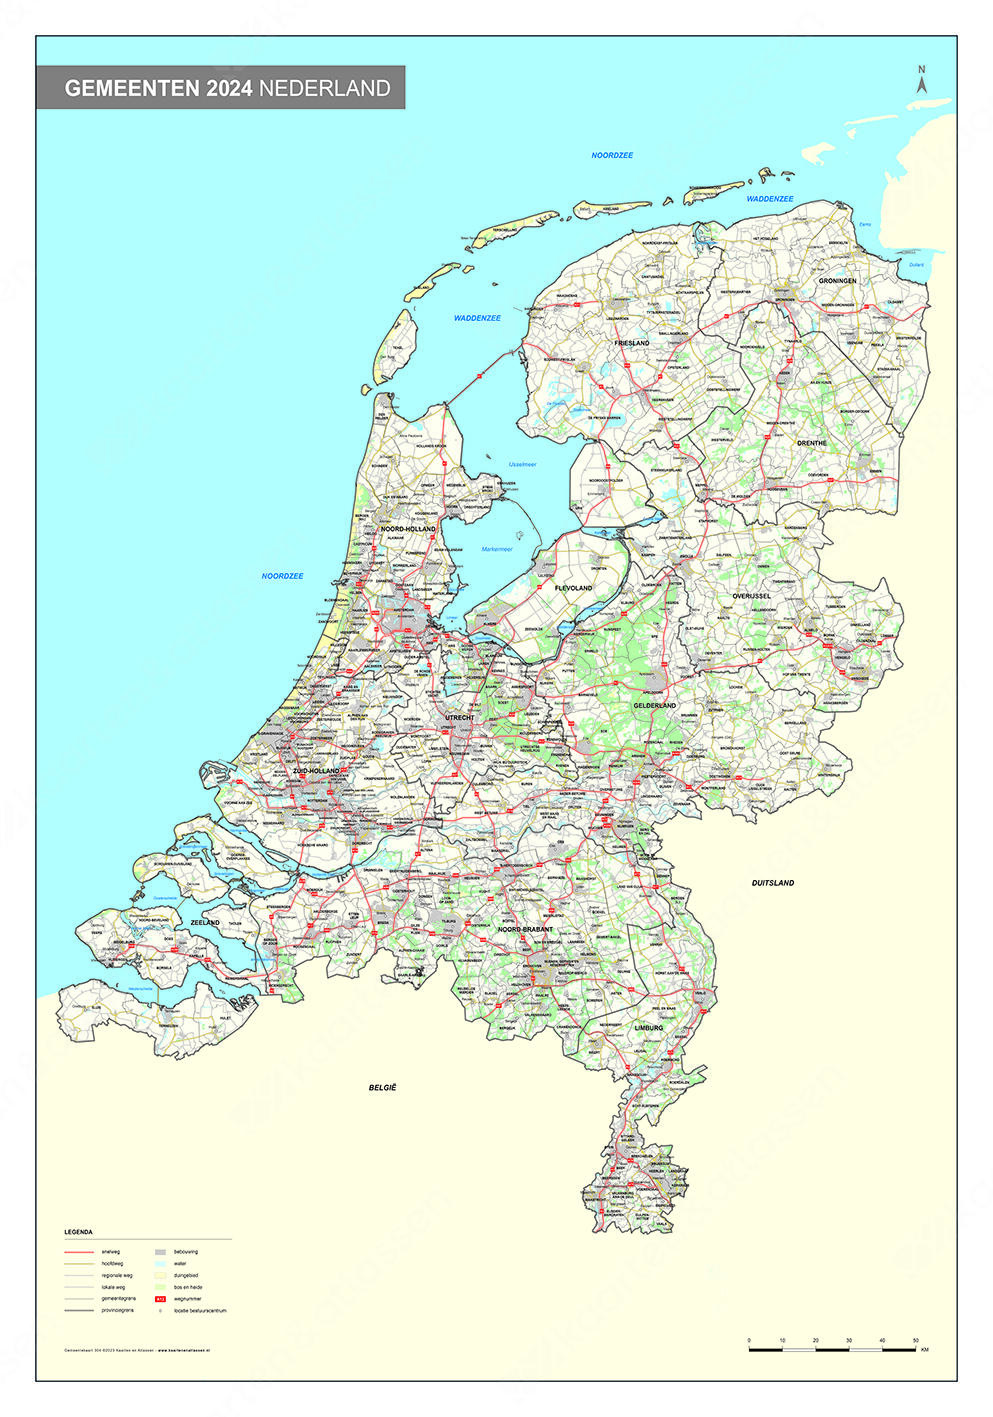 Digitale Gemeentekaart Nederland Gedetailleerd